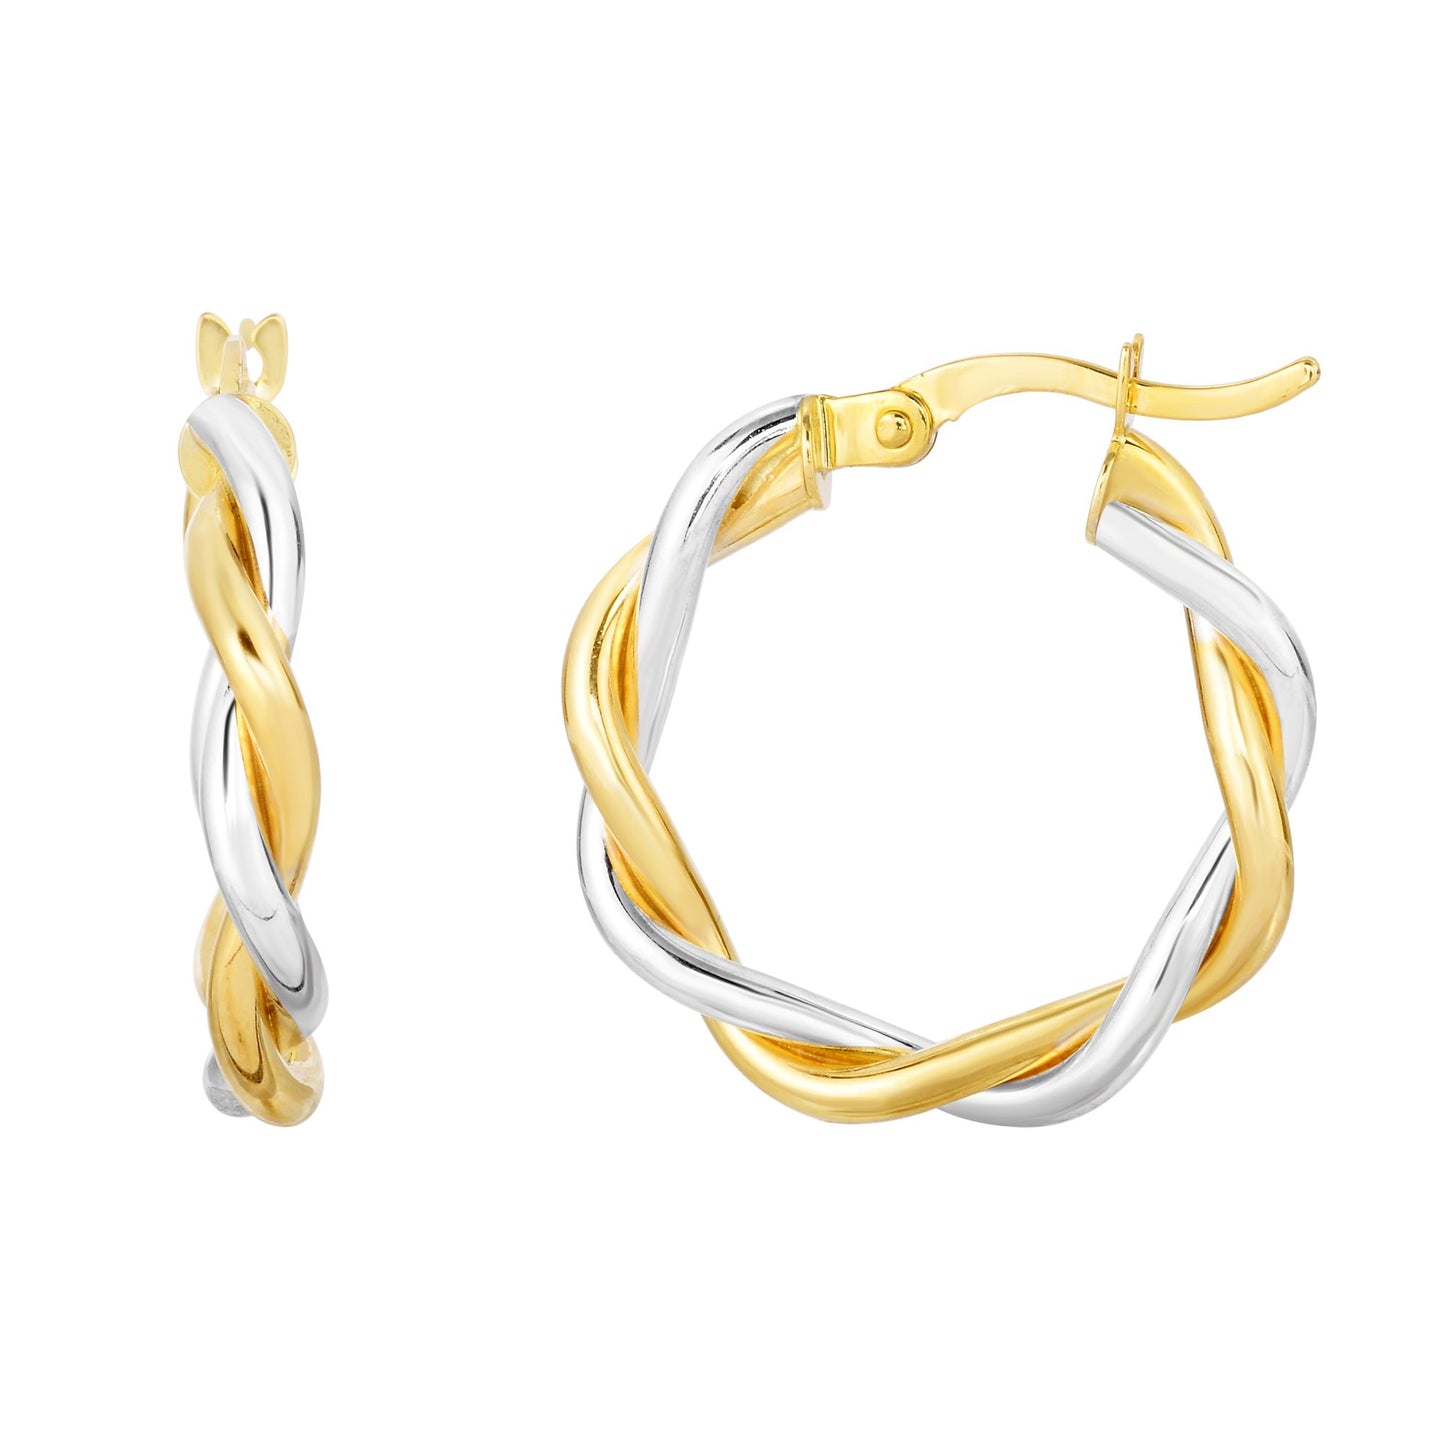 10K Gold Polished Twist Hoop Earring